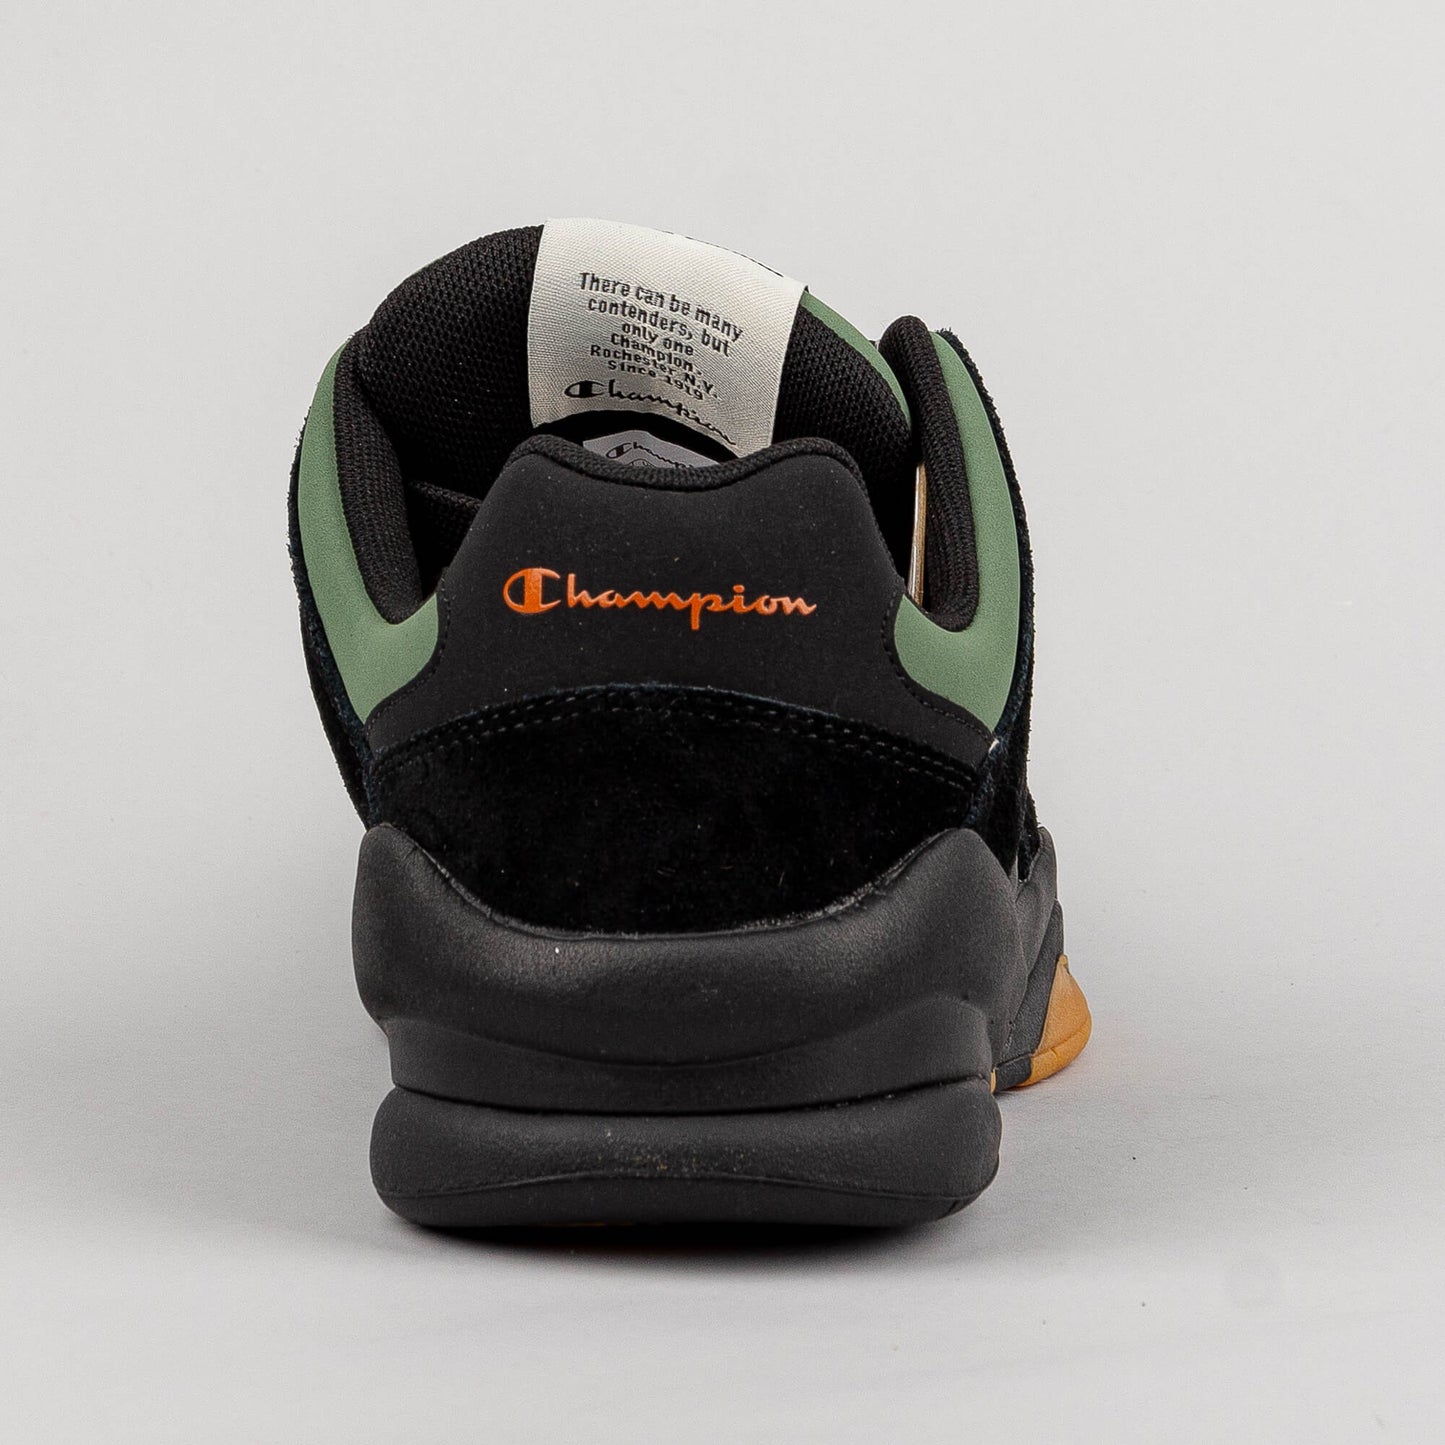 Champion Low Cut Shoe Z90 Skate Black/Green/Orange